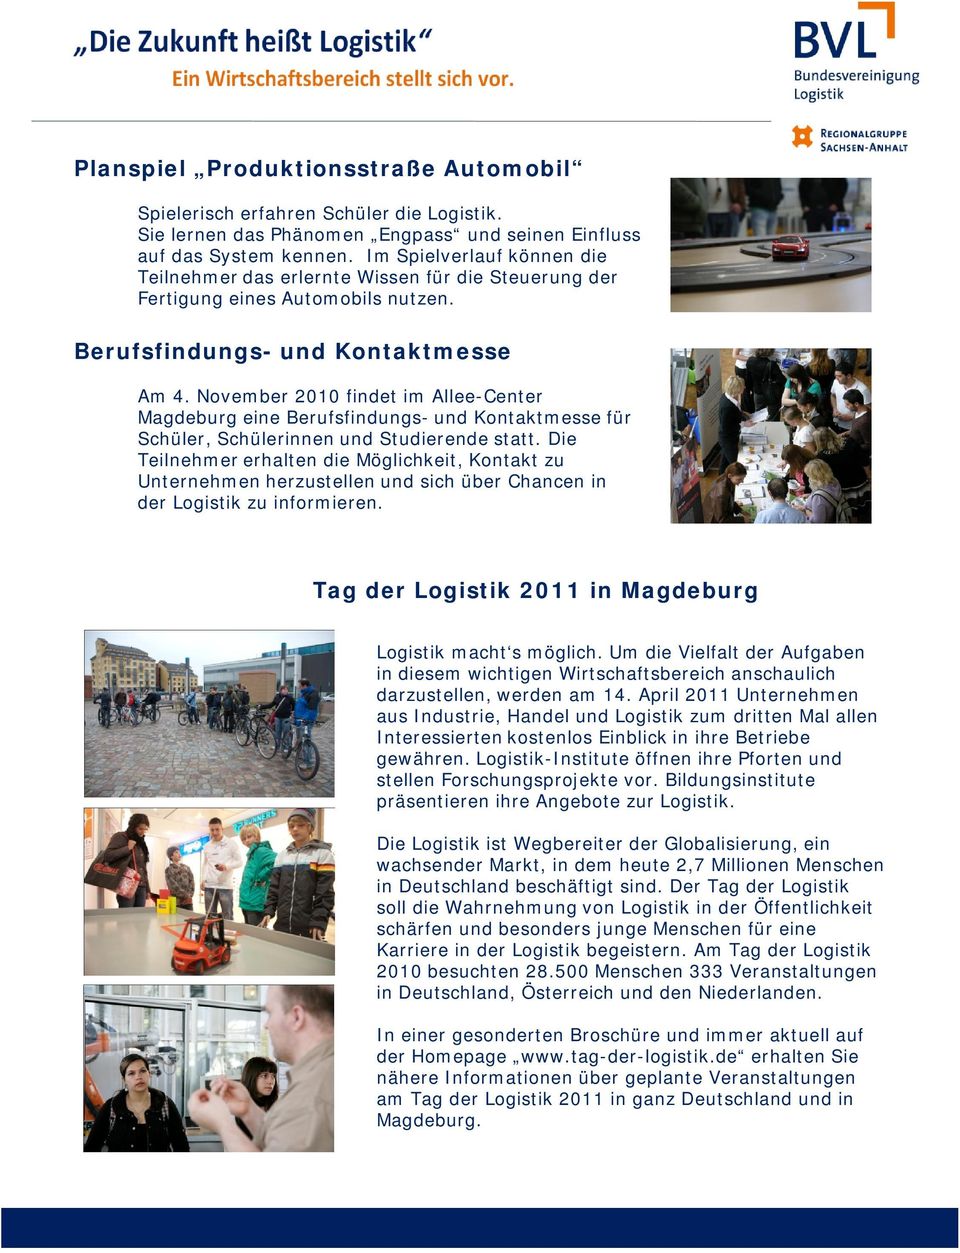 November 2010 findet im Allee-Center Magdeburg eine Berufsfindungs- und Kontaktmesse für Schüler, Schülerinnen und Studierende statt.